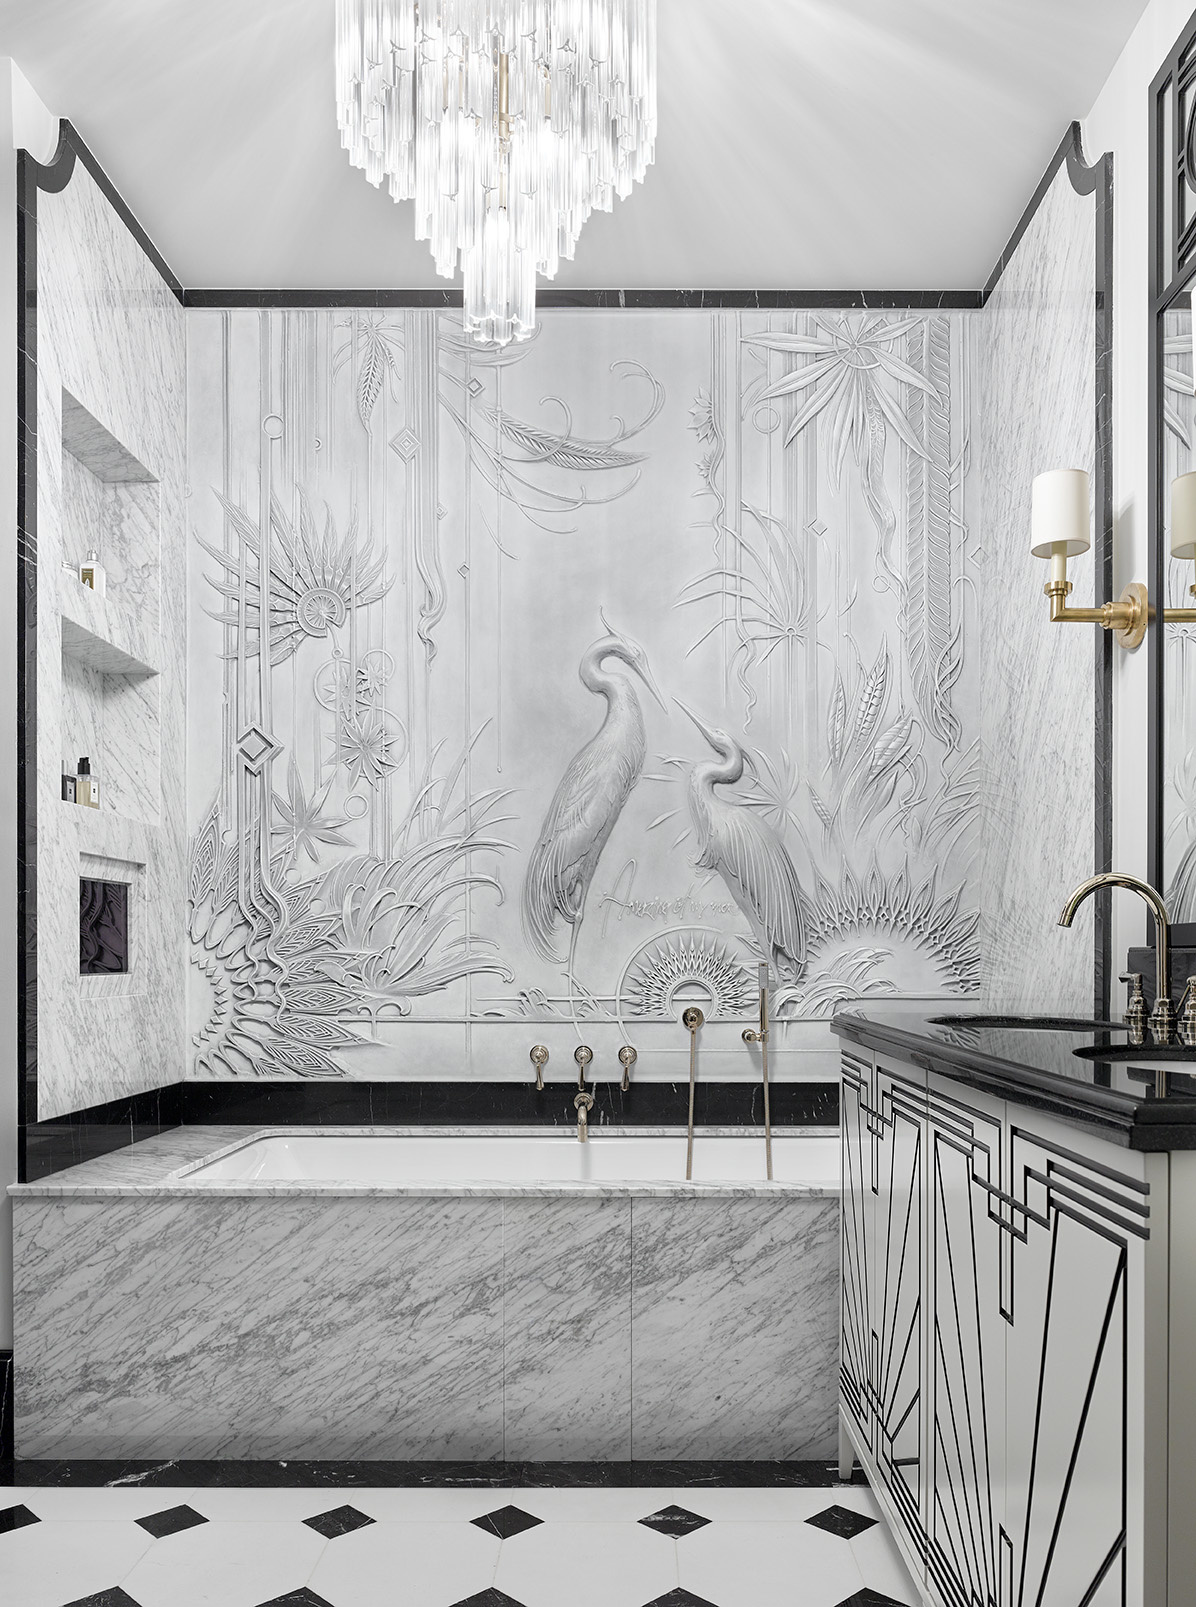 Dự án của NTK Katerina Lashmanova biến phòng tắm thành một không gian tinh tế với chiếc đèn chùm pha lê lộng lẫy, giấy dán tường hình đôi chim hạc sinh động, đặc biệt là sắc màu của đá cẩm thạch như hòa với bức tranh vào làm một.